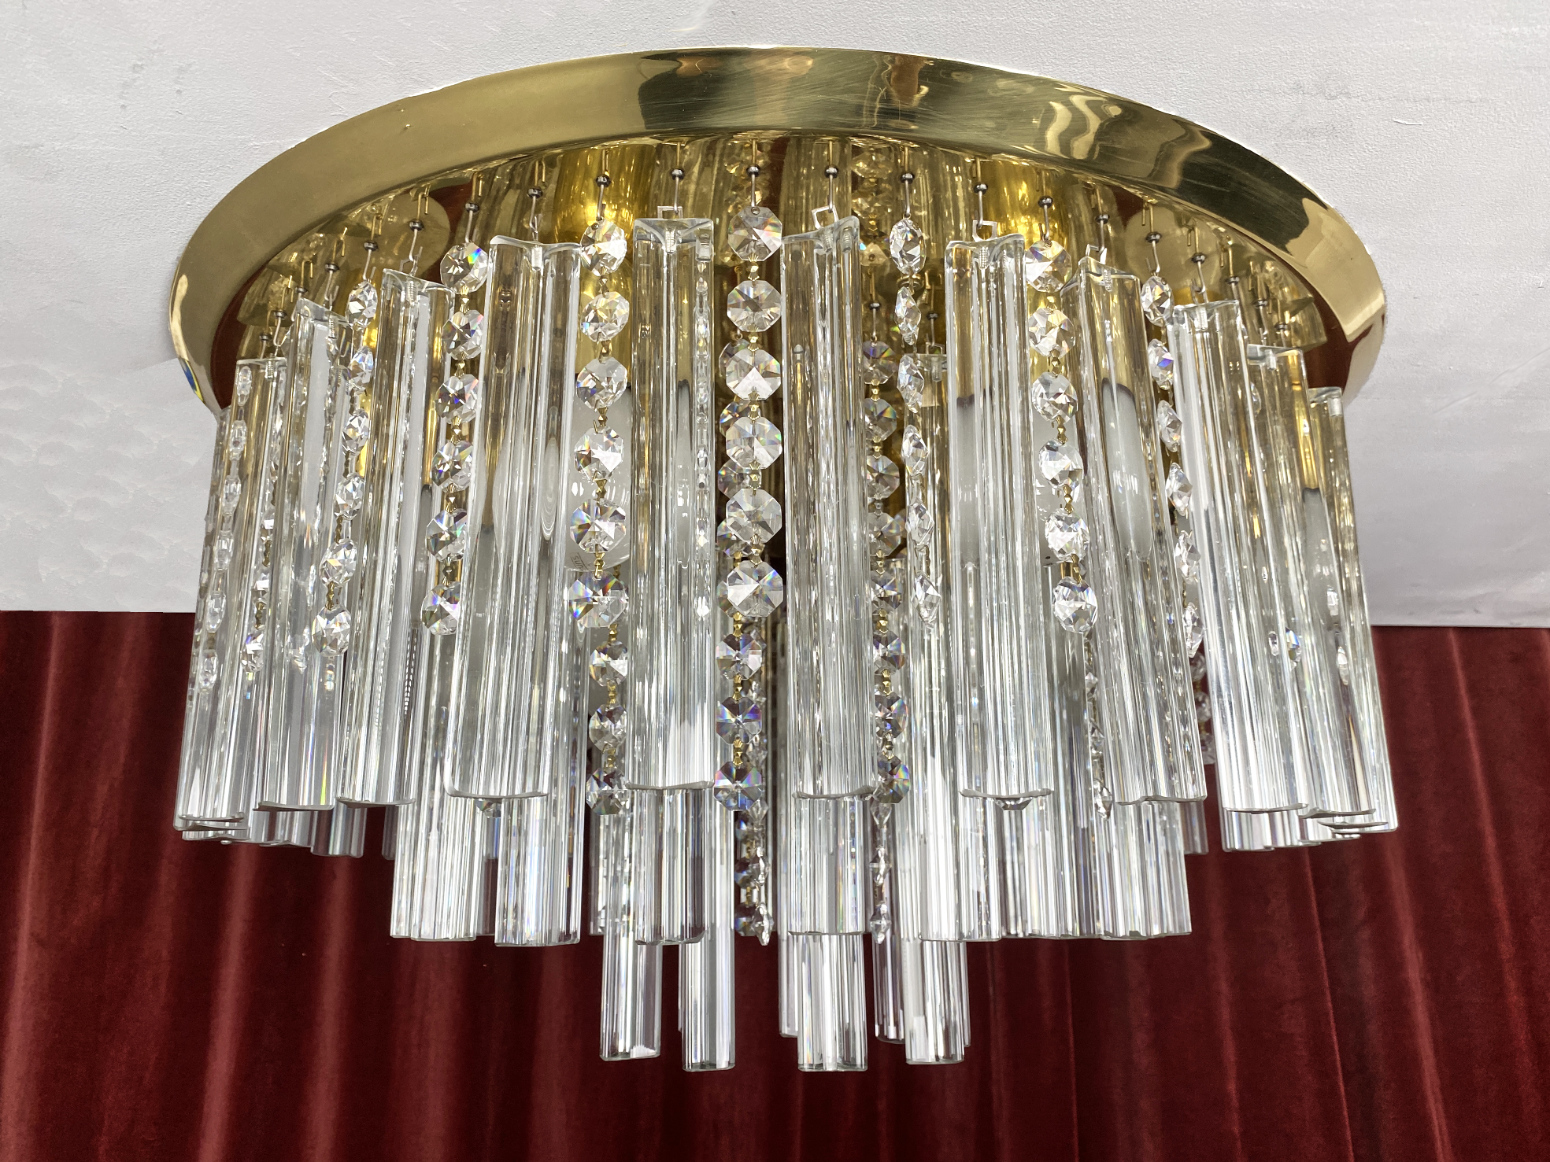 Deckenlampe von J.T. Kalmar Wien mit Murano Kristall Glas Behang, Österreich, 1970er. Die Deckenlampe hat 122 Kristall Teile.